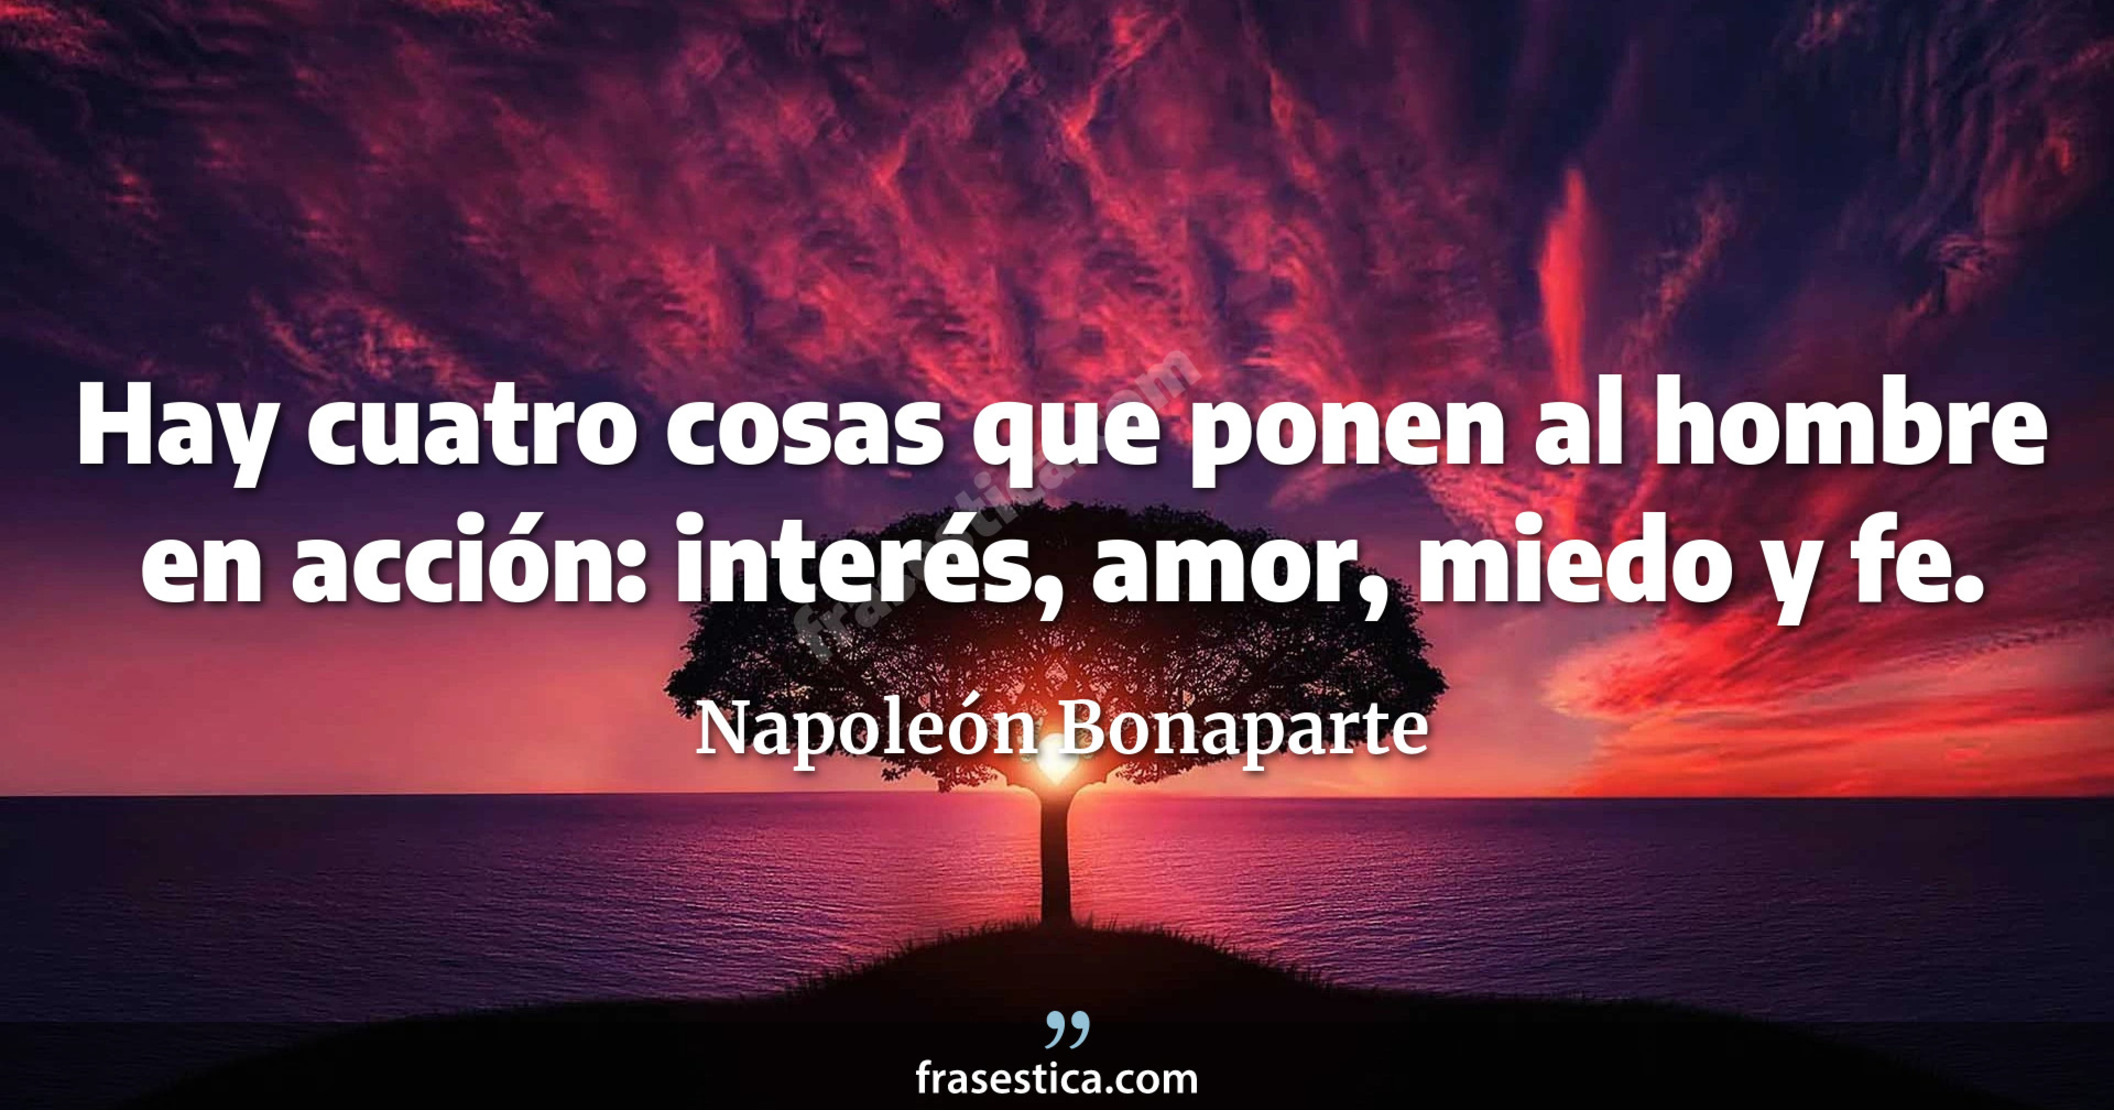 Hay cuatro cosas que ponen al hombre en acción: interés, amor, miedo y fe. - Napoleón Bonaparte